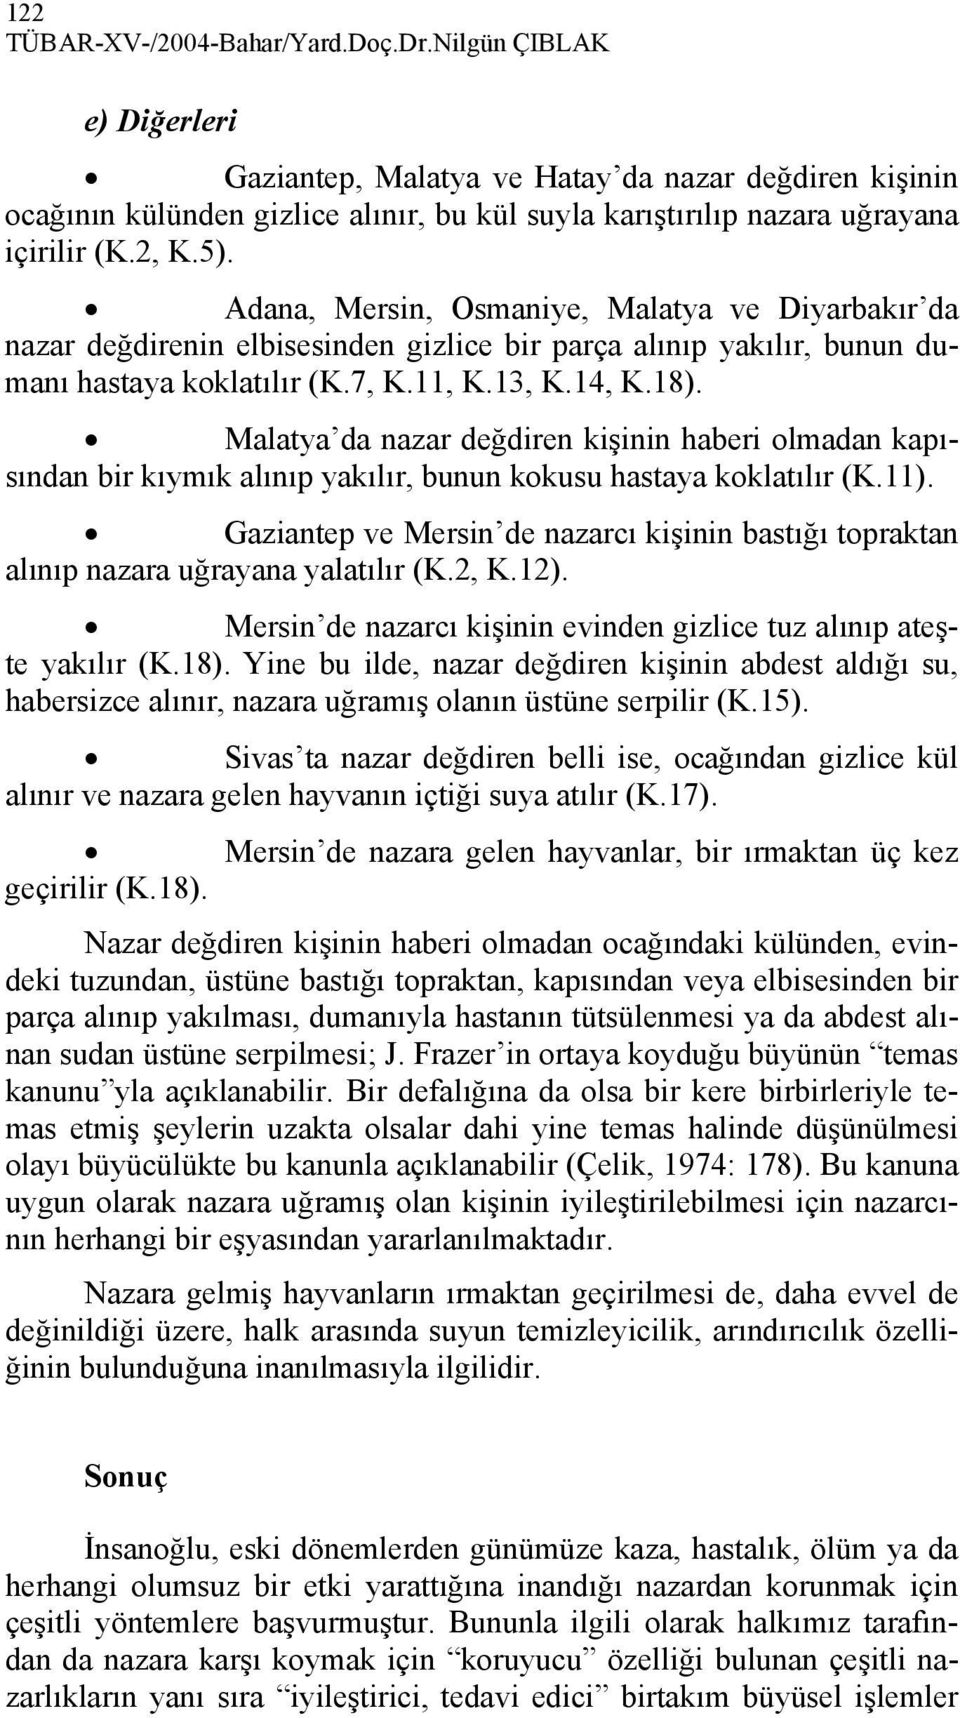 Adana, Mersin, Osmaniye, Malatya ve Diyarbakır da nazar değdirenin elbisesinden gizlice bir parça alınıp yakılır, bunun dumanı hastaya koklatılır (K.7, K.11, K.13, K.14, K.18).